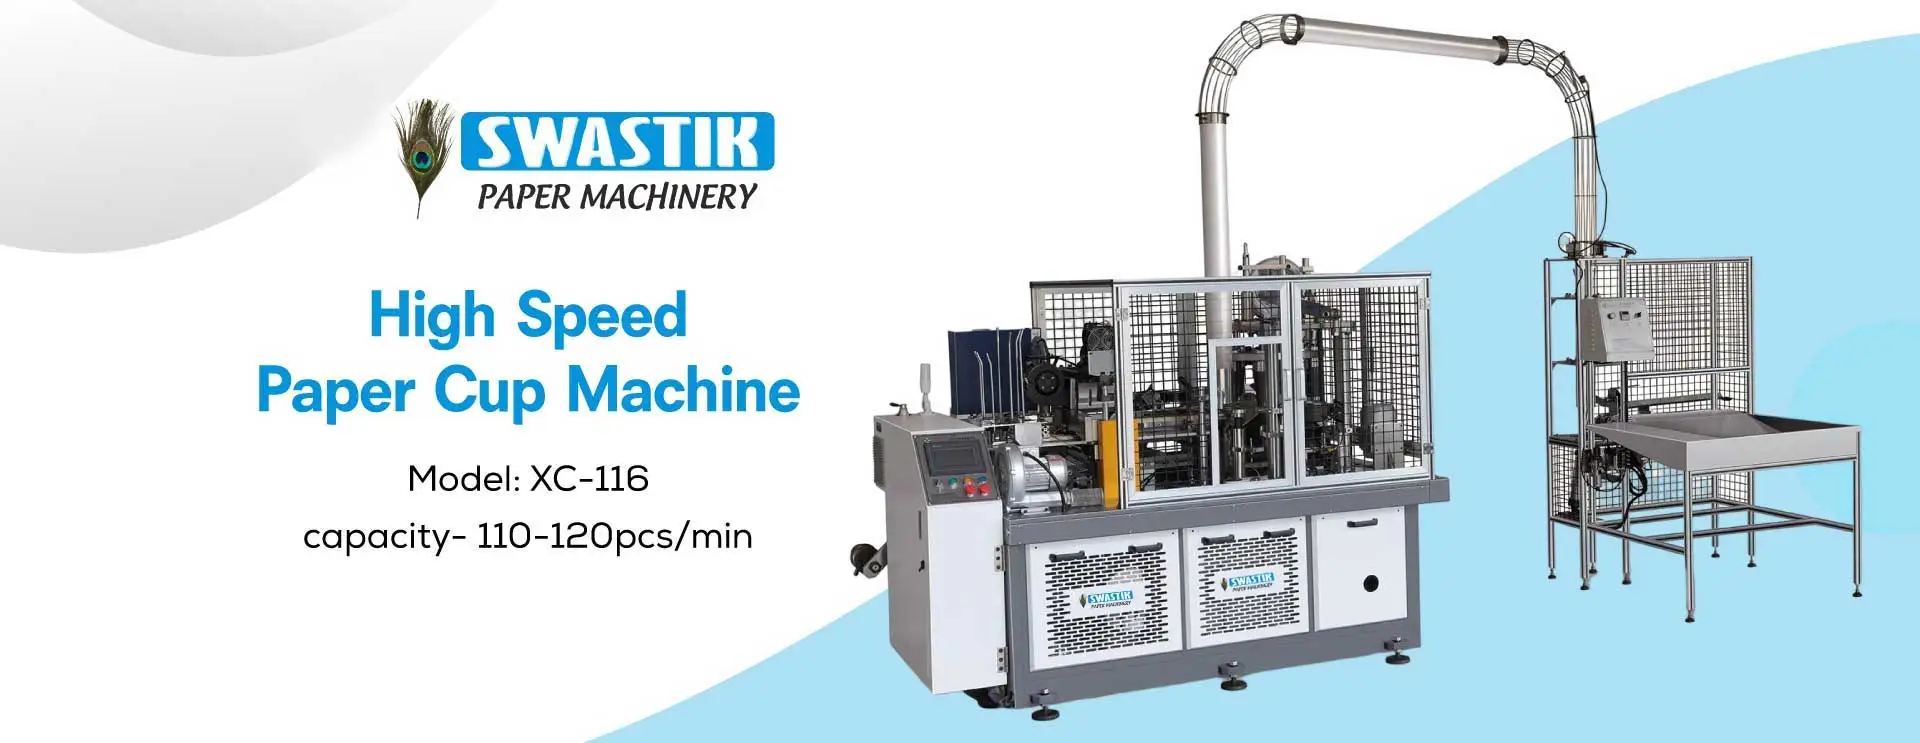 High Speed Paper Cup Machine Manufacturers in Delhi